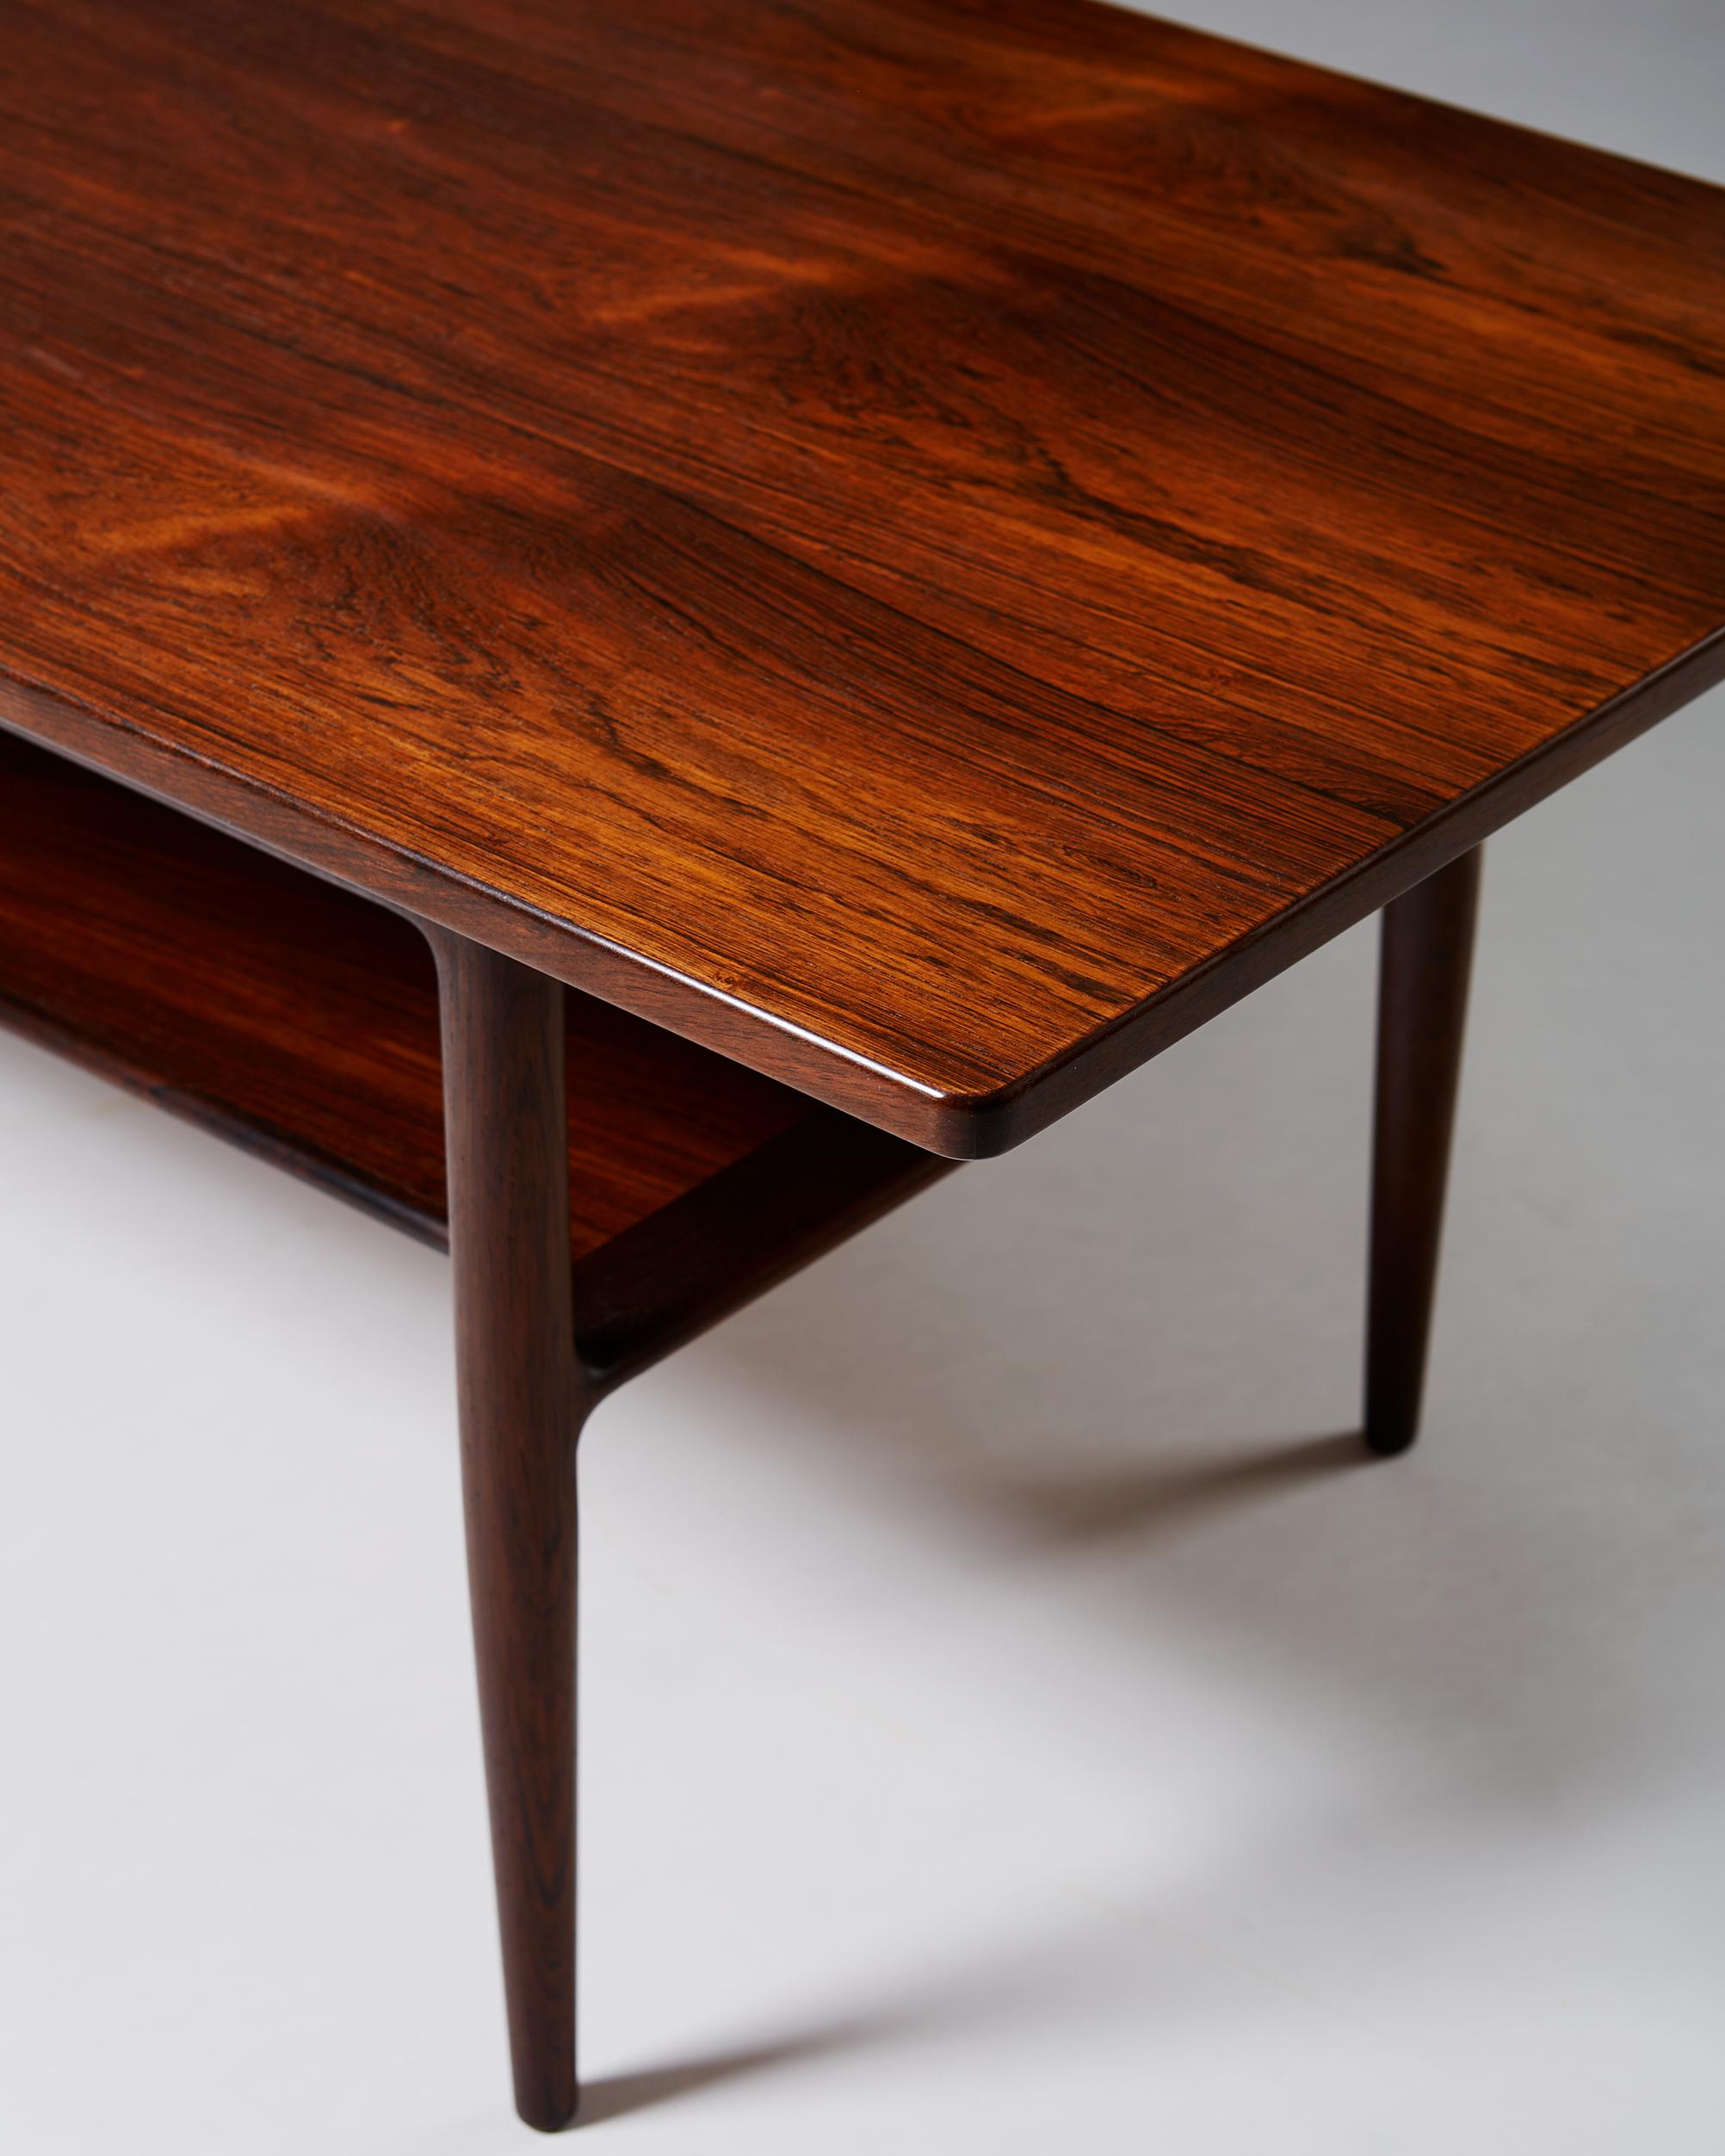 Mid-20th Century Occasional Table Designed by Ib Kofod-Larsen for Christensen & Larsen, Denmark For Sale